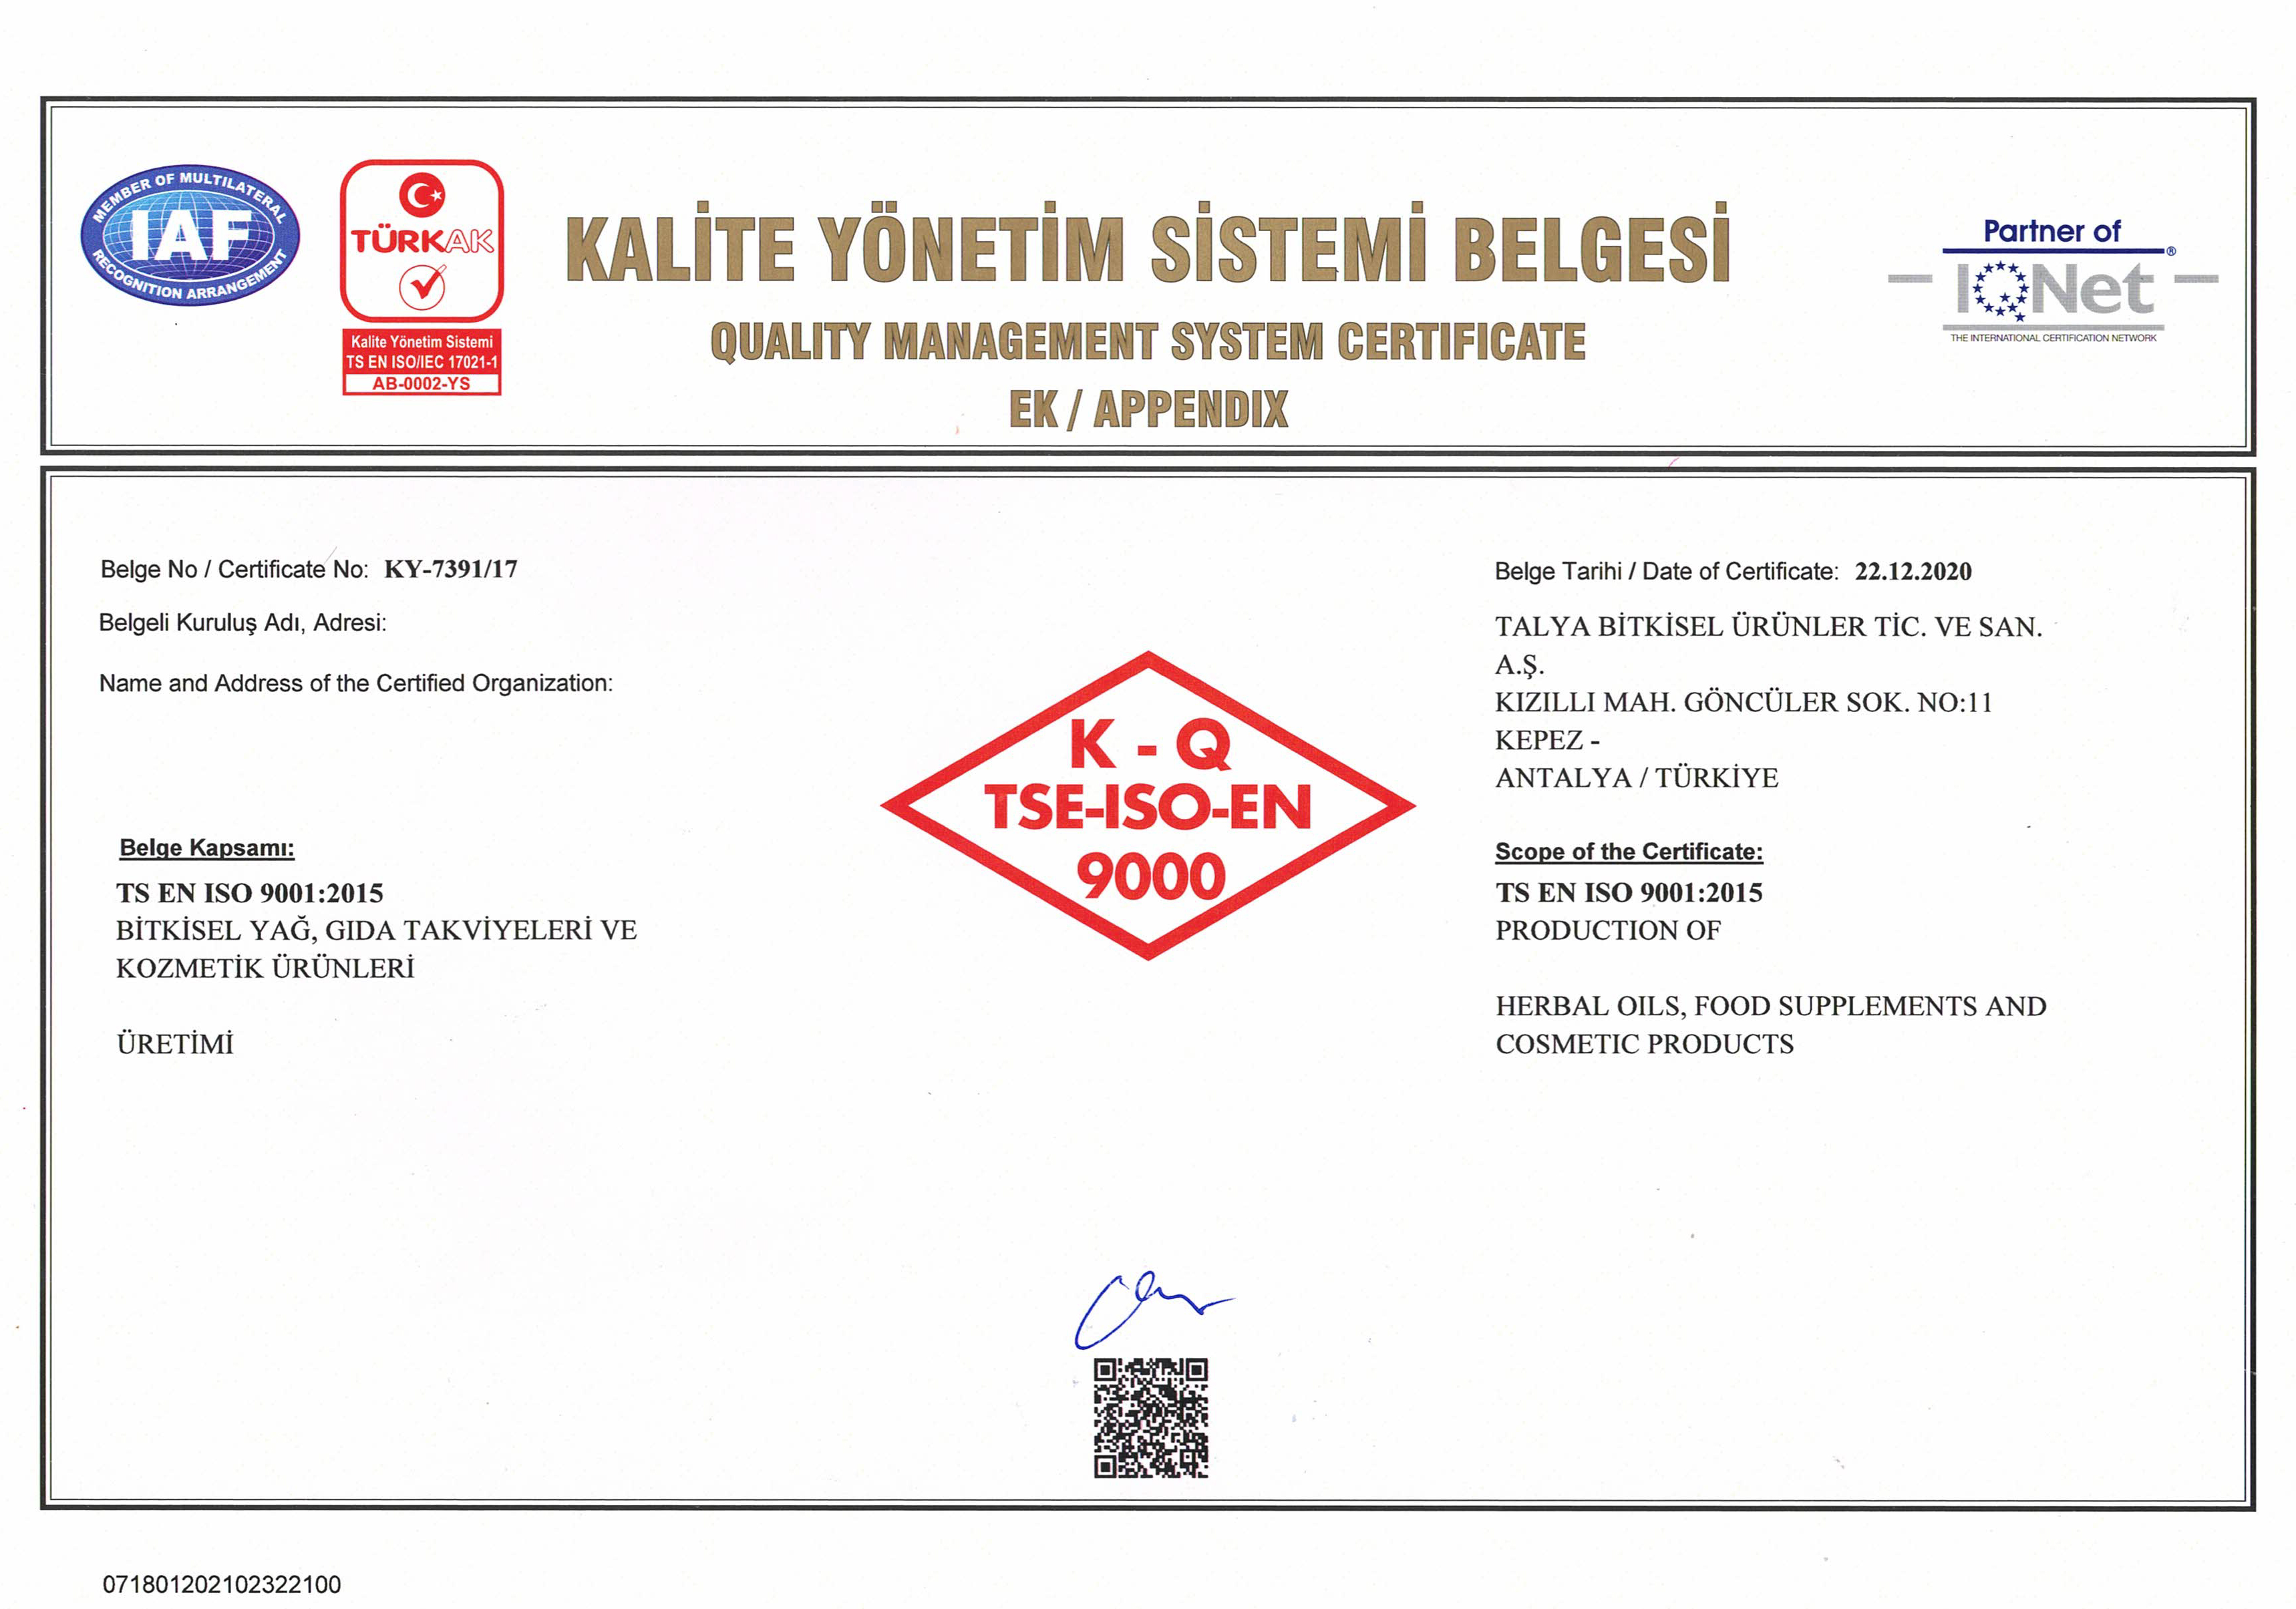 Kalite yönetim sistemi belgesi